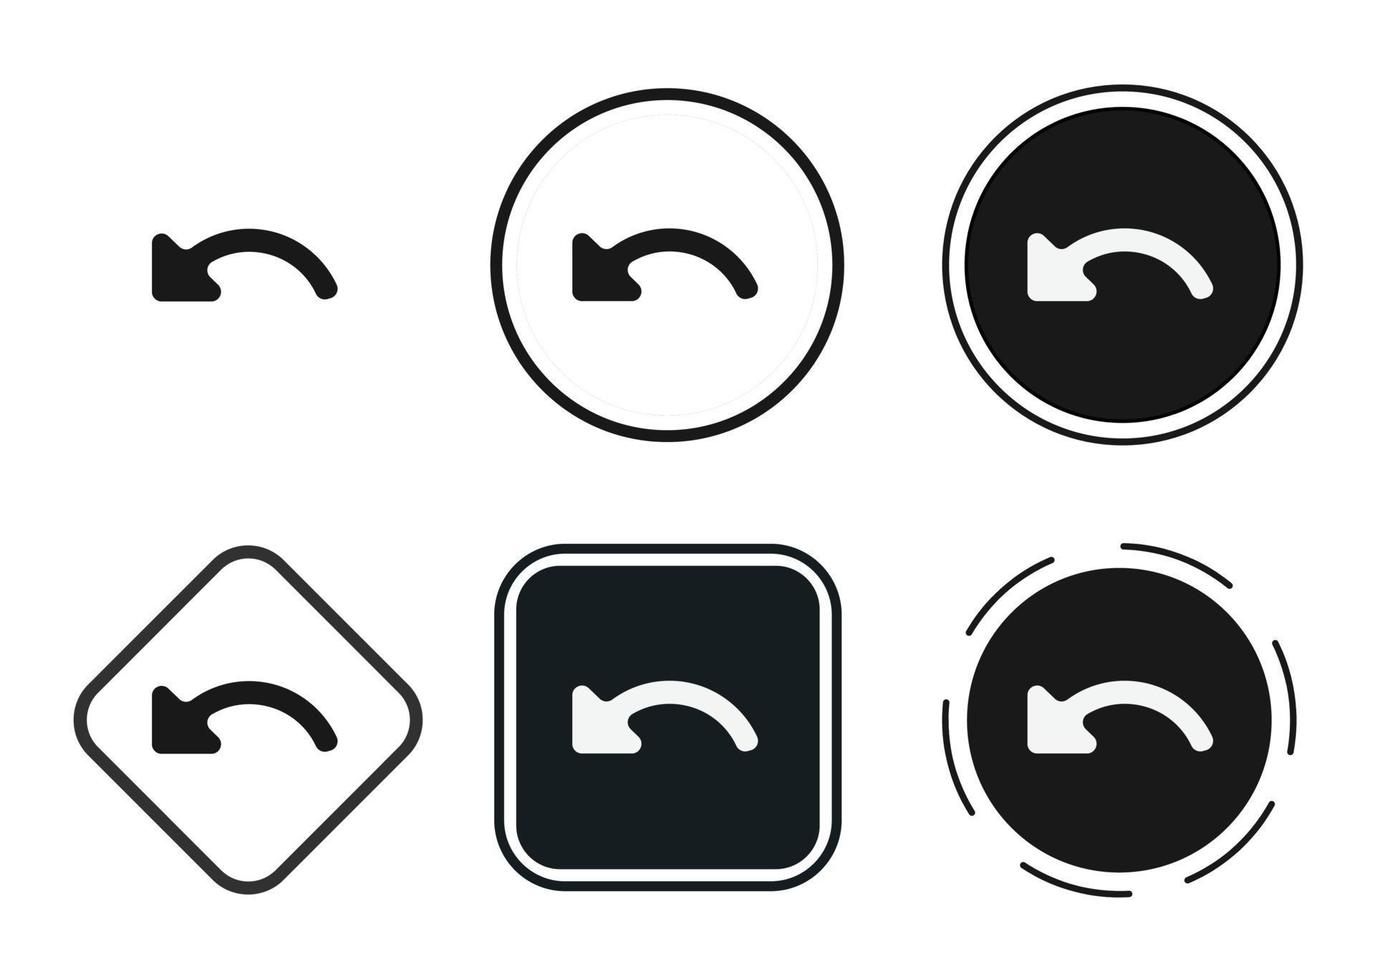 desfazer conjunto de ícones. coleção de logotipo de contorno preto de alta qualidade para design de site e aplicativos móveis de modo escuro. ilustração vetorial em um fundo branco vetor